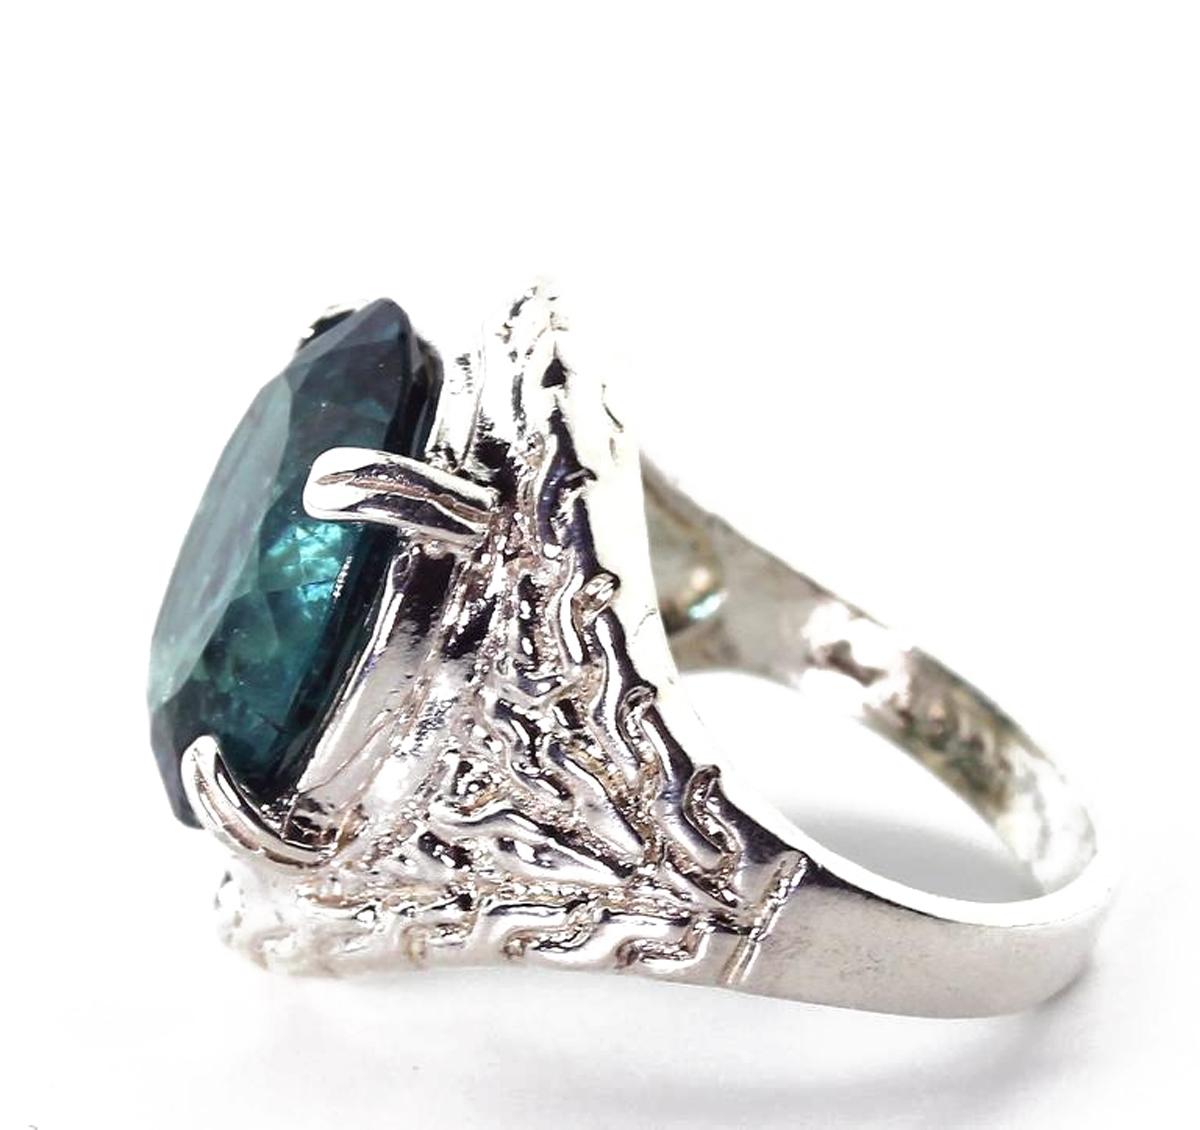 Außergewöhnlich seltener, durchscheinender, einzigartiger, natürlicher, blinkender, blaugrüner, ovaler brasilianischer Turmalin von 8+ Karat, gefasst in diesem schönen, handgefertigten Ring.  Es gibt keine Kratzer auf diesem schönen Edelstein - das